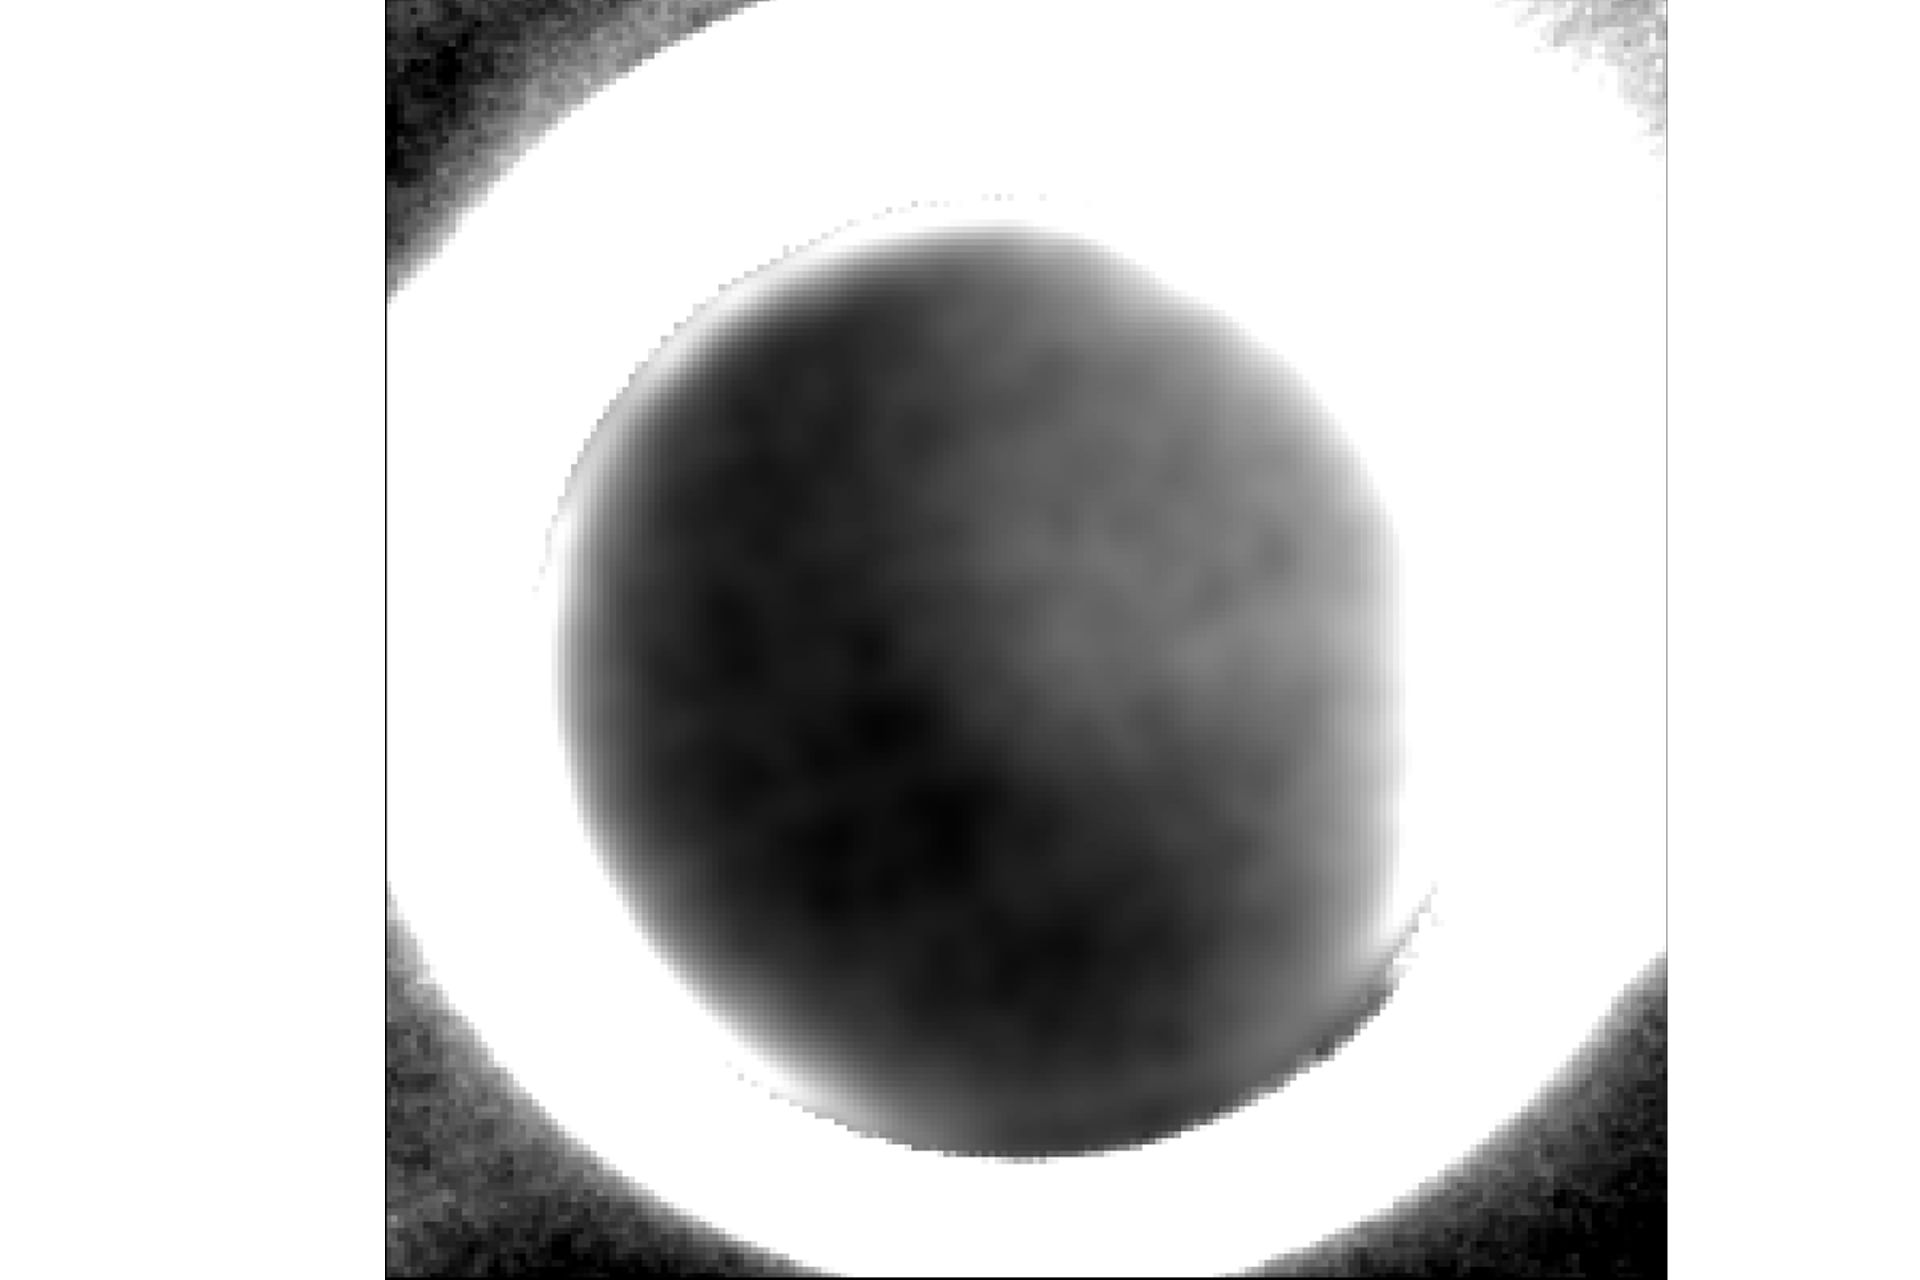 سمت تاریک پلوتو ثبت شده با فضاپیما نیو هورایزنز ناسا